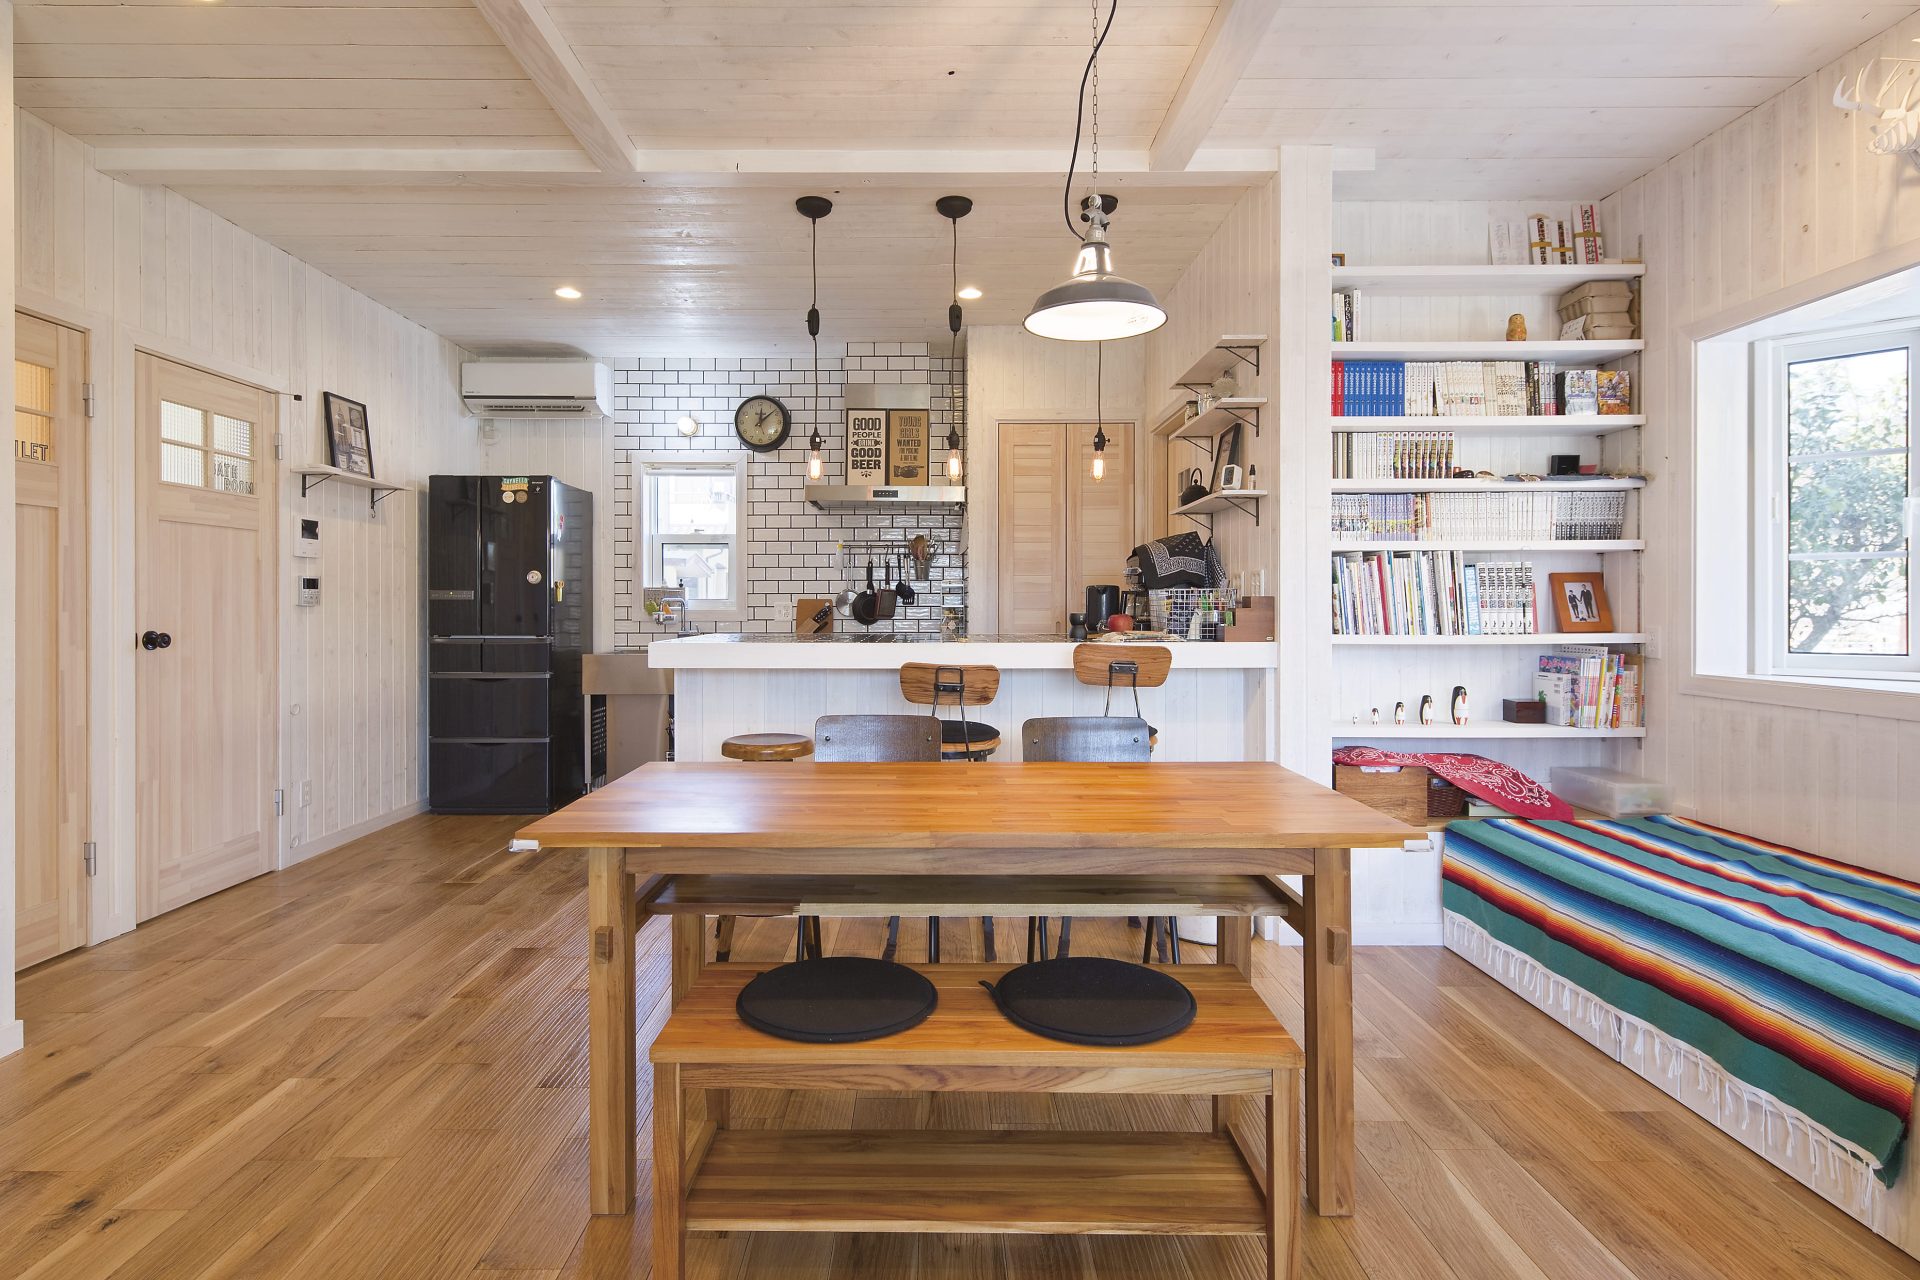 リラックスした雰囲気あふれるカリフォルニアスタイルの家のゆったりとした雰囲気漂うダイニングキッチン